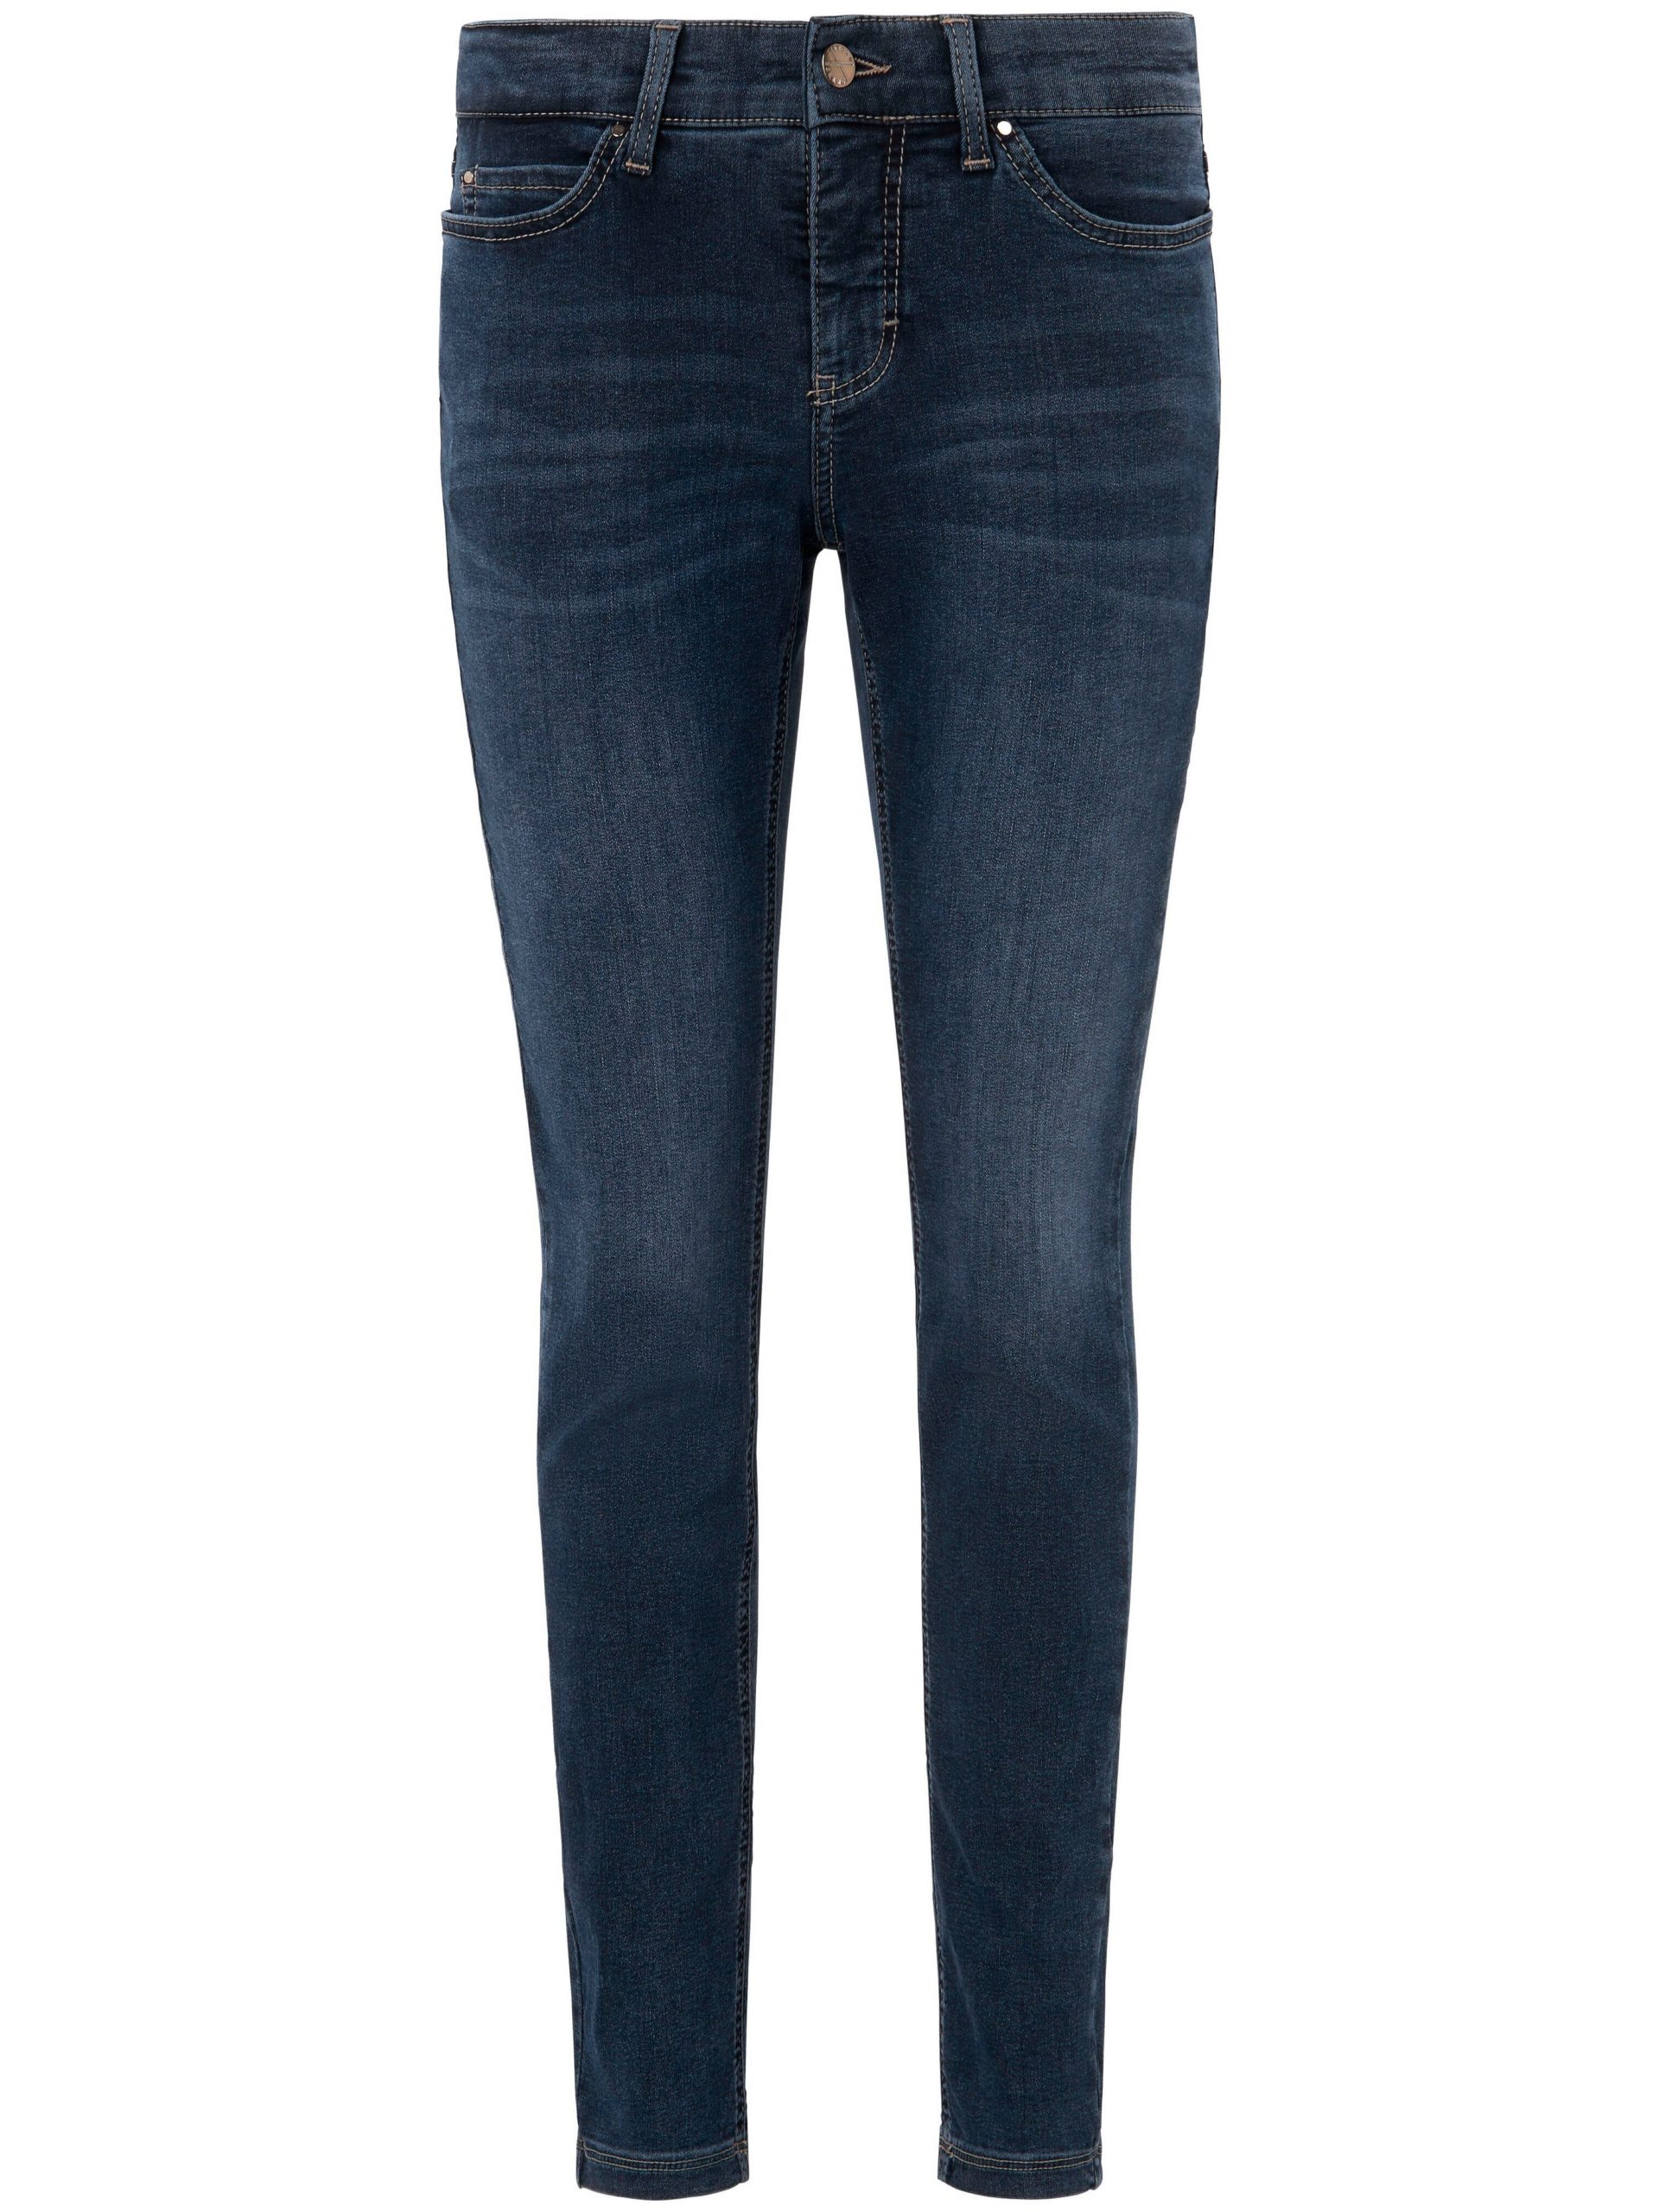 Jeans Dream Skinny met smalle pijpen Van Mac denim Kopen